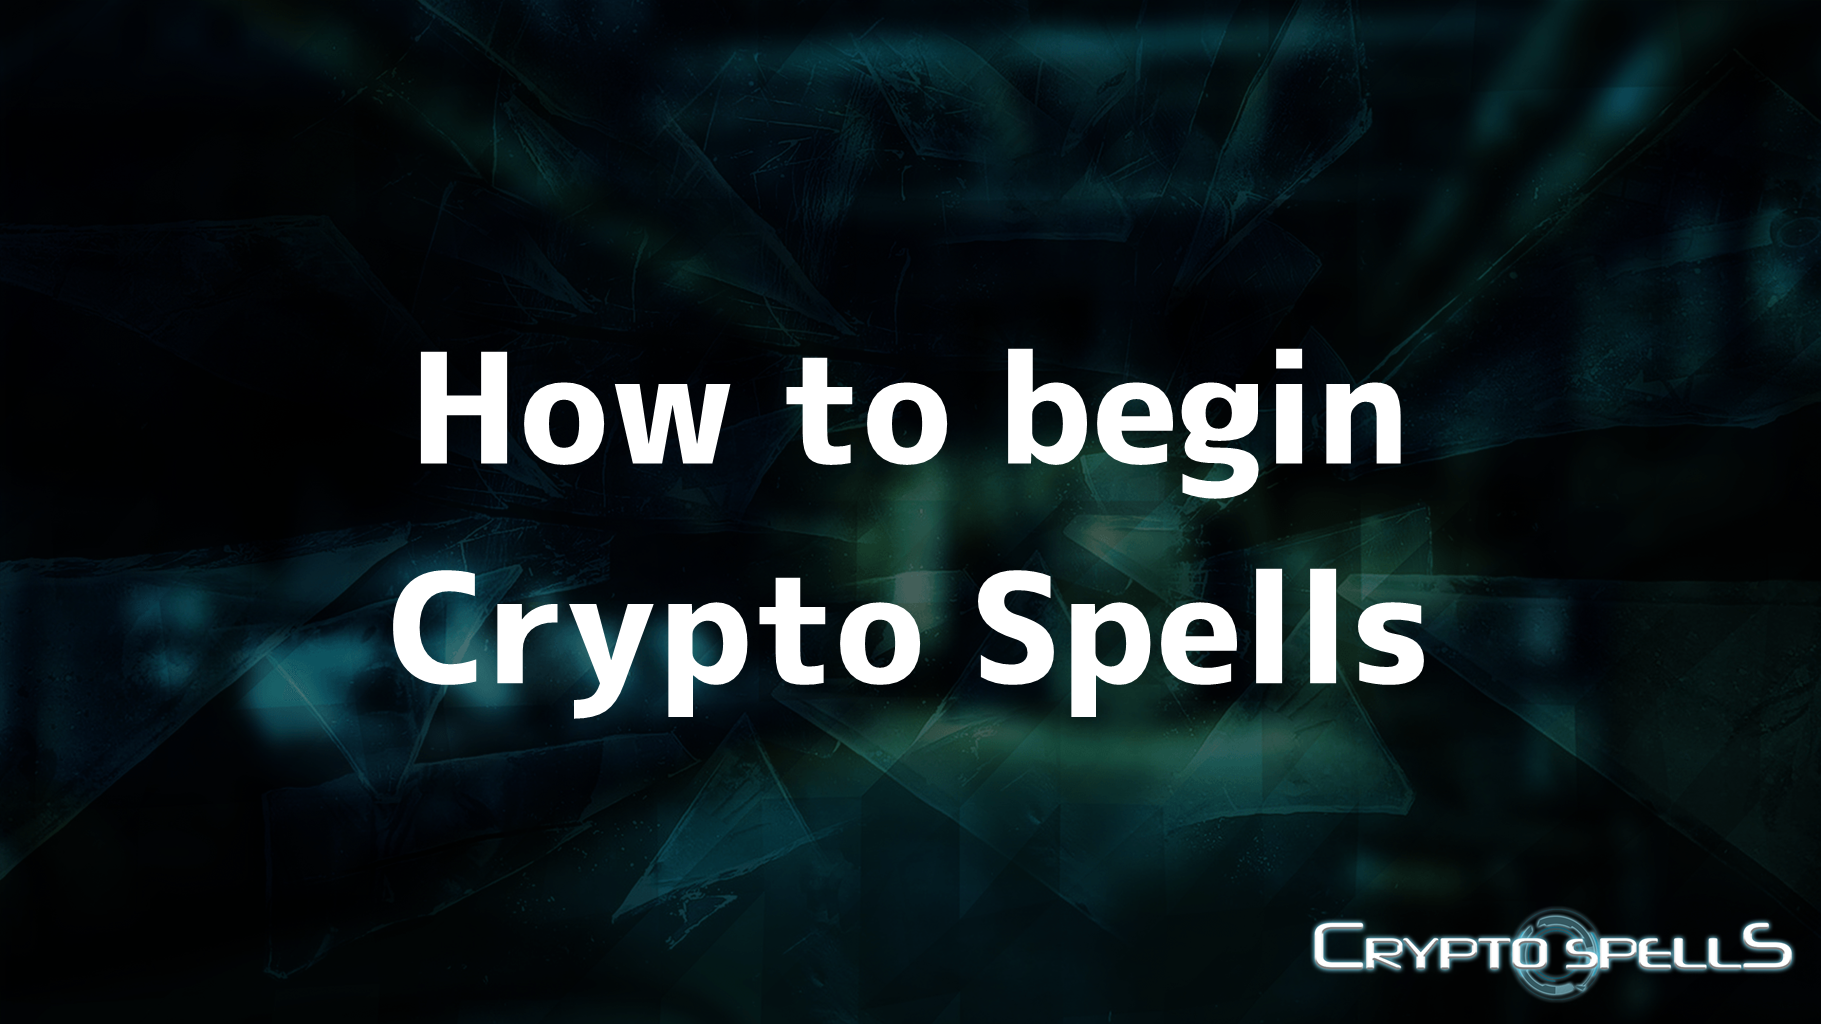 How to begin Crypto Spells - Cryptospells_en